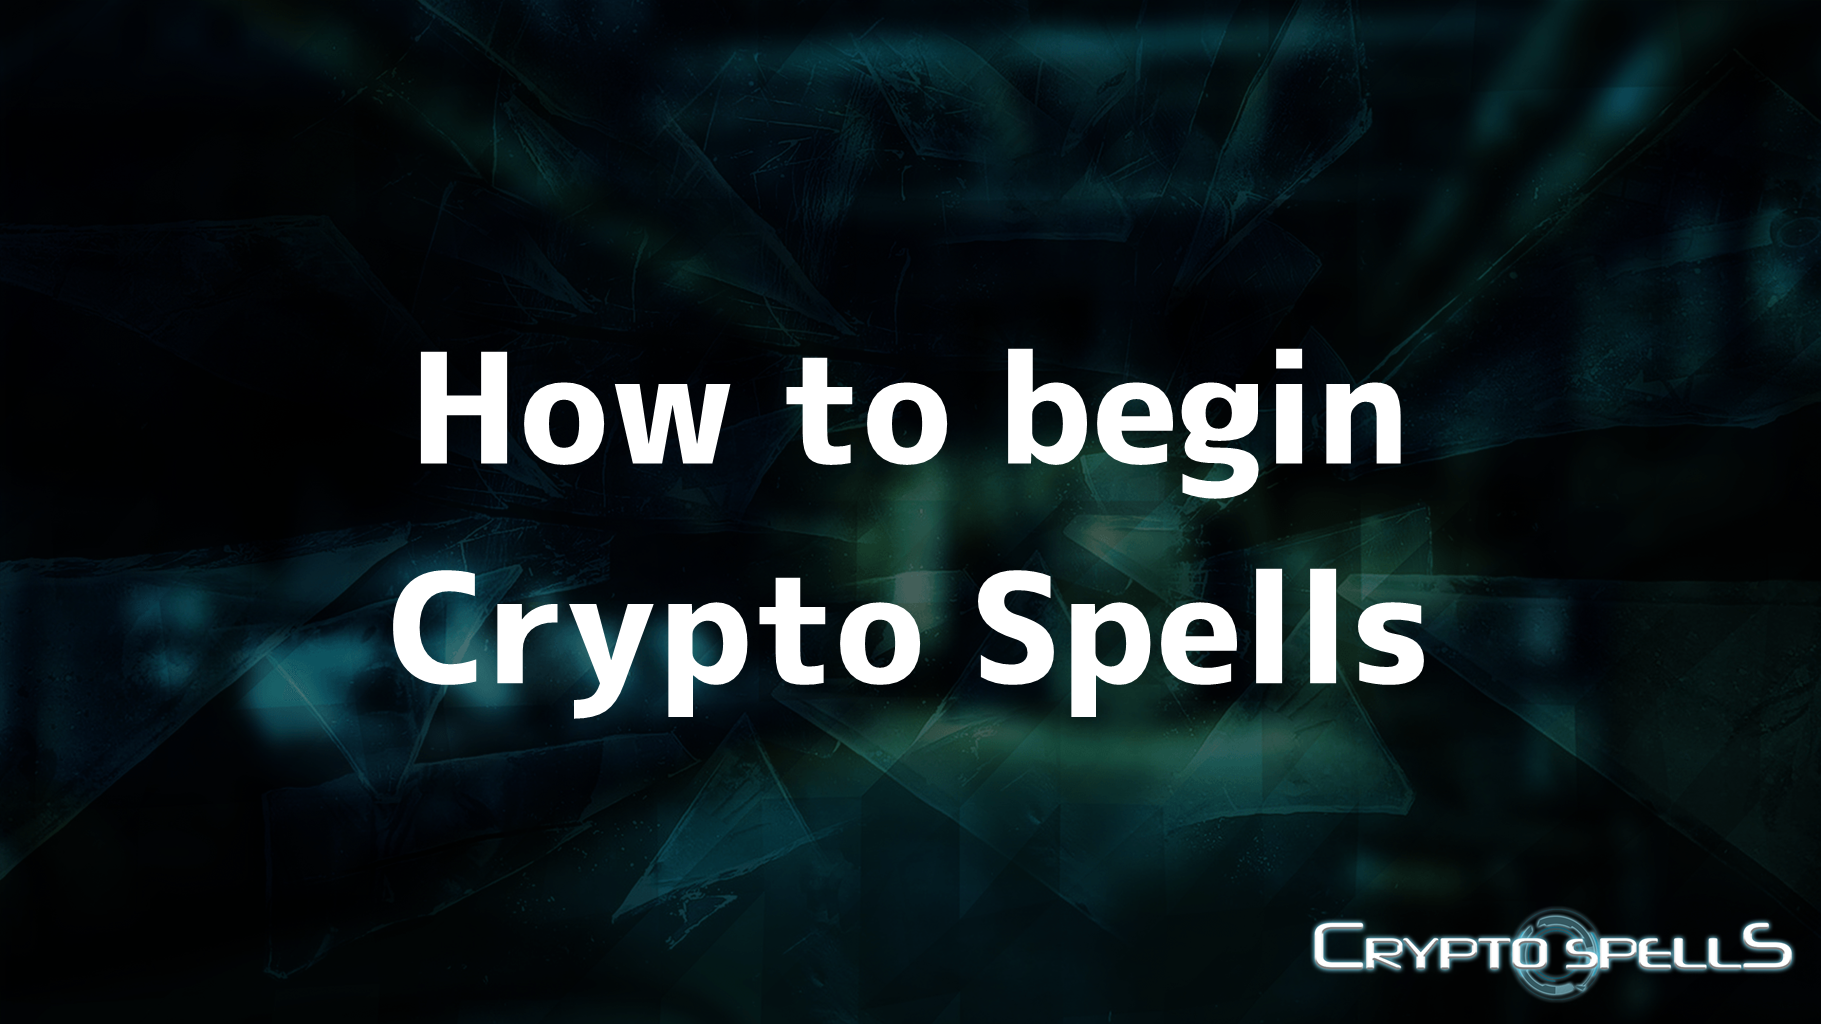 How to begin Crypto Spells - Cryptospells_en